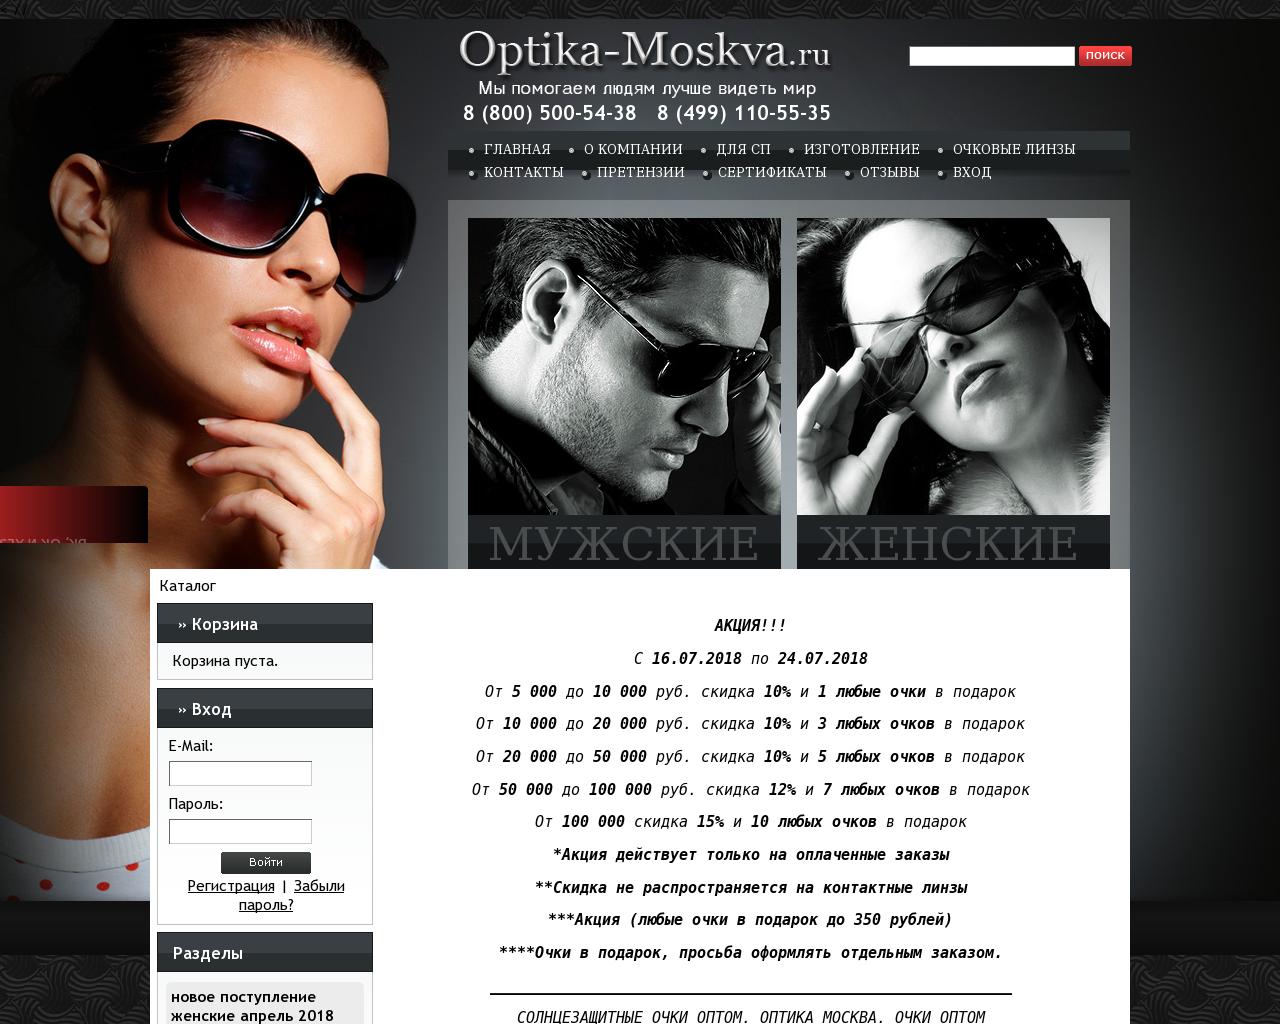 Изображение сайта optica-moskva.ru в разрешении 1280x1024